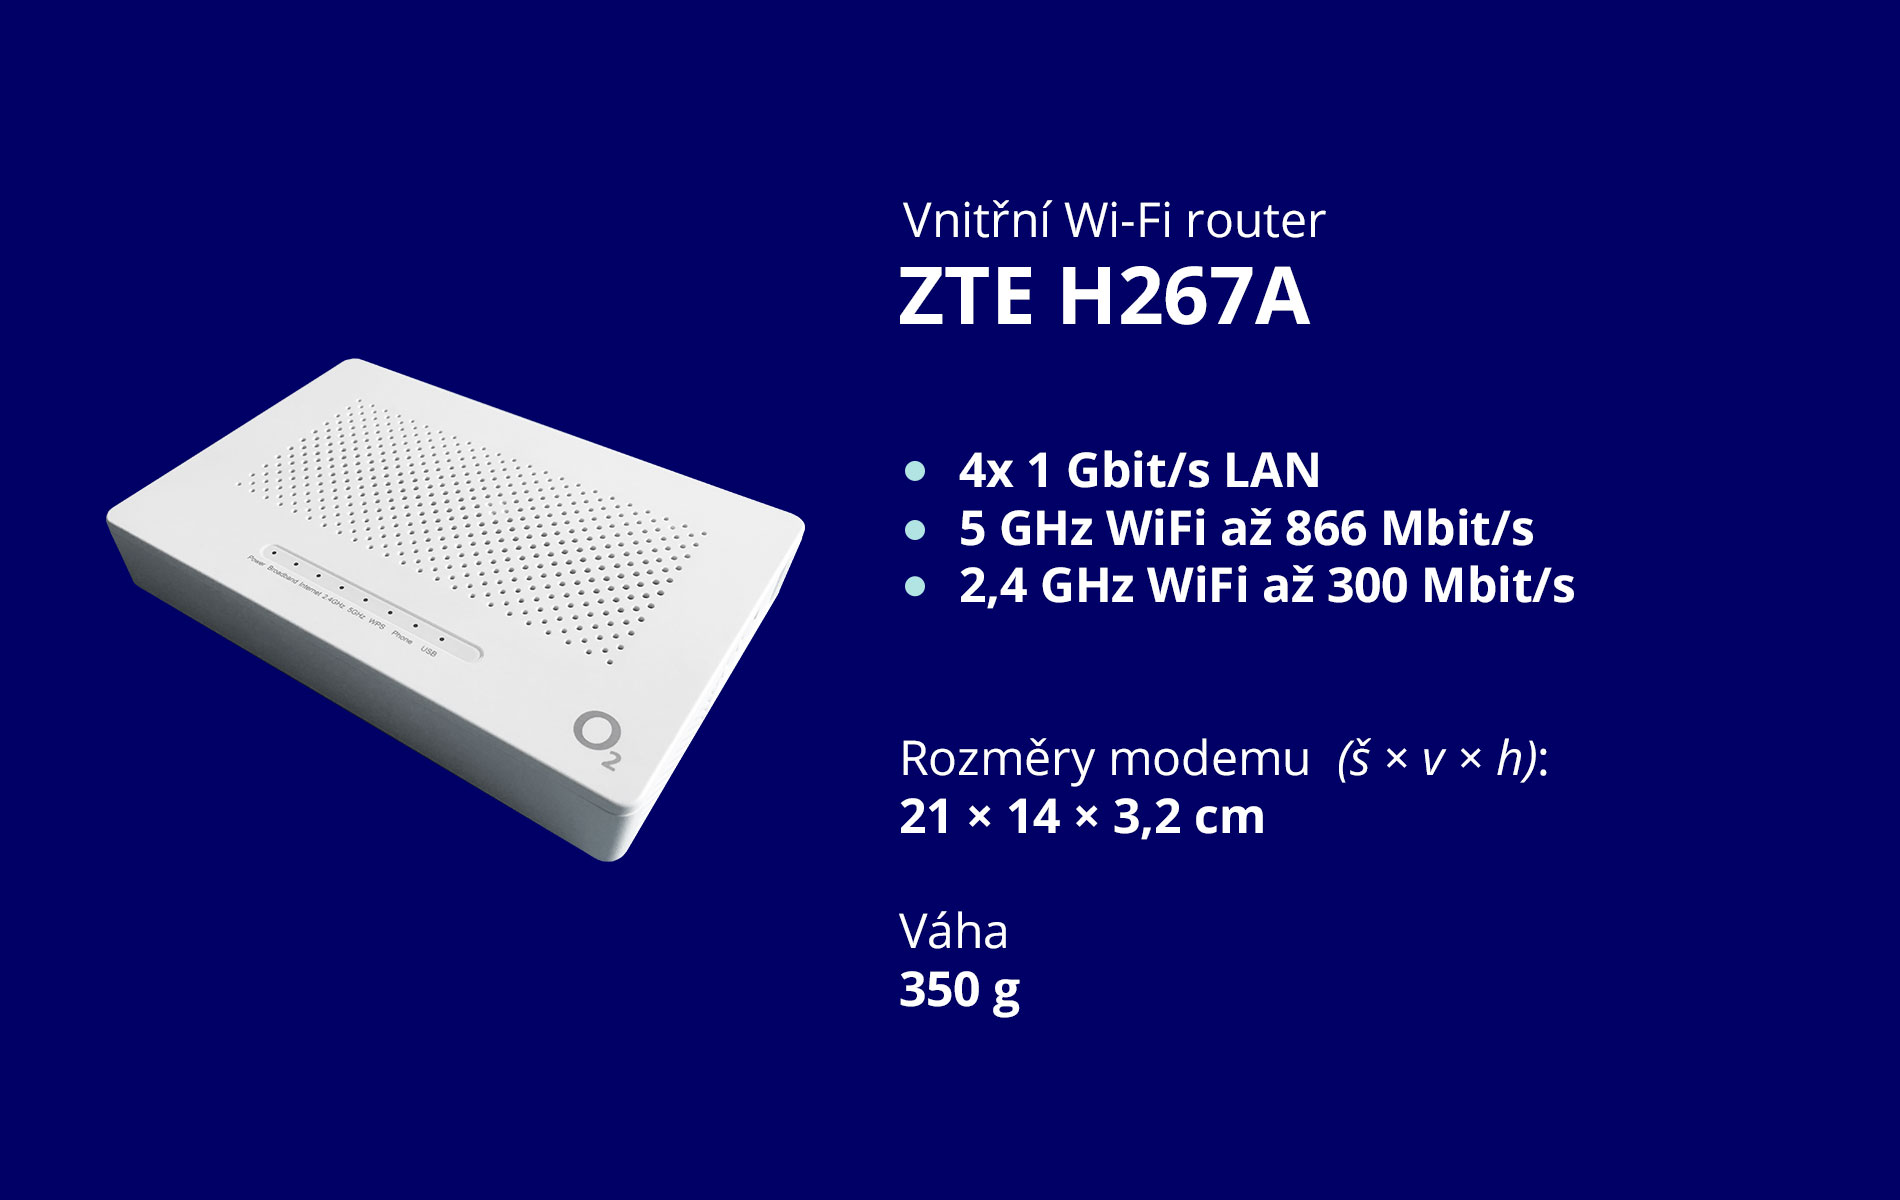 Vitřní router ZTE